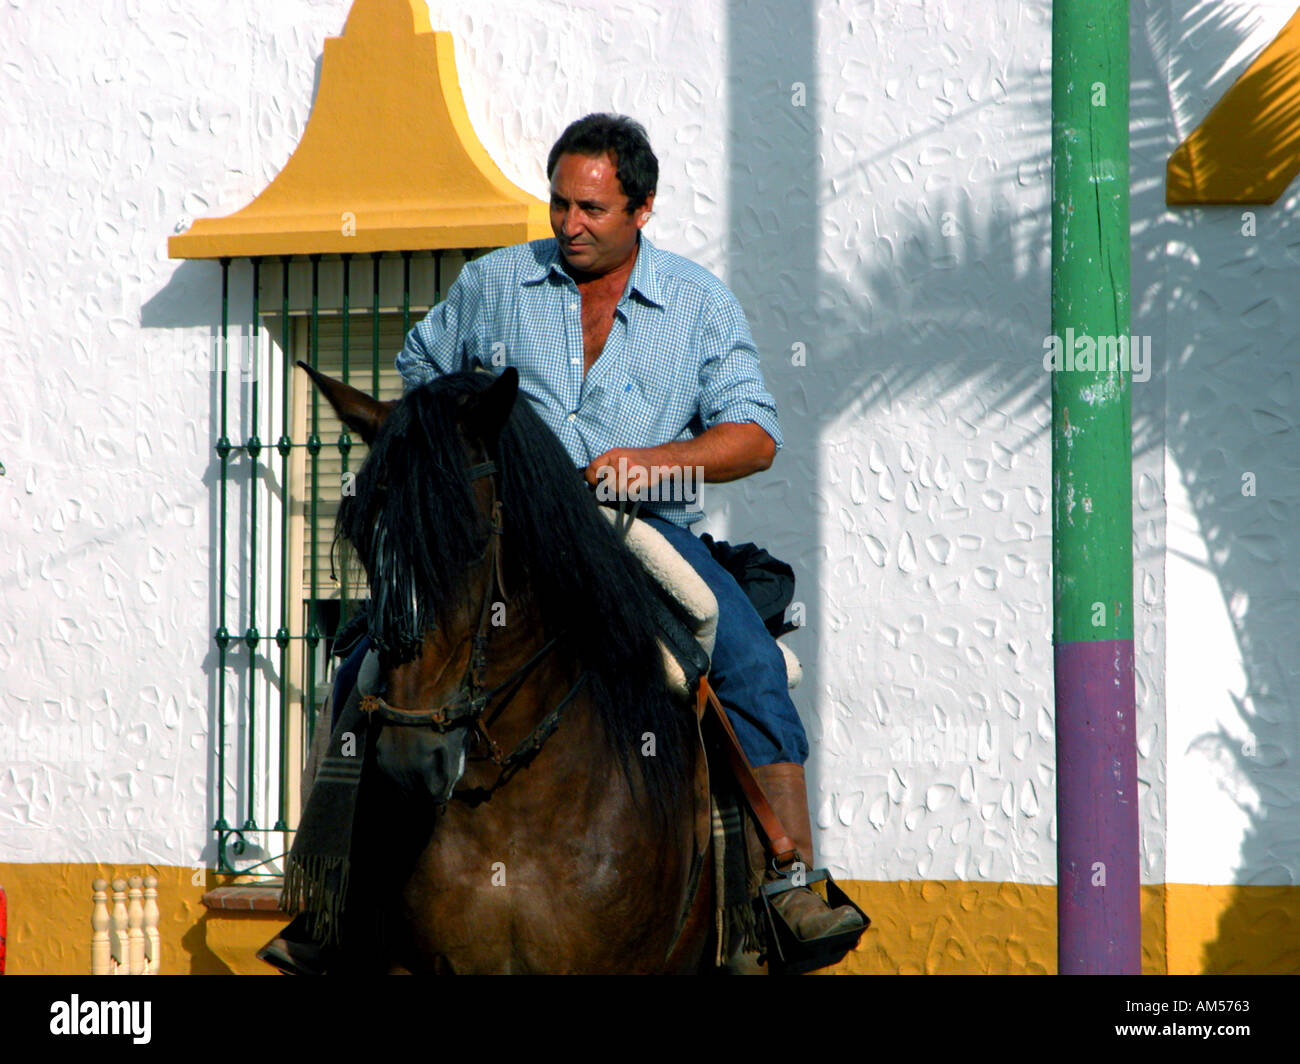 Homme à cheval à la Feria de la Virgen del Rosario Fête de la Vierge du Rosaire Fuengirola espagne Octobre 2003 Banque D'Images